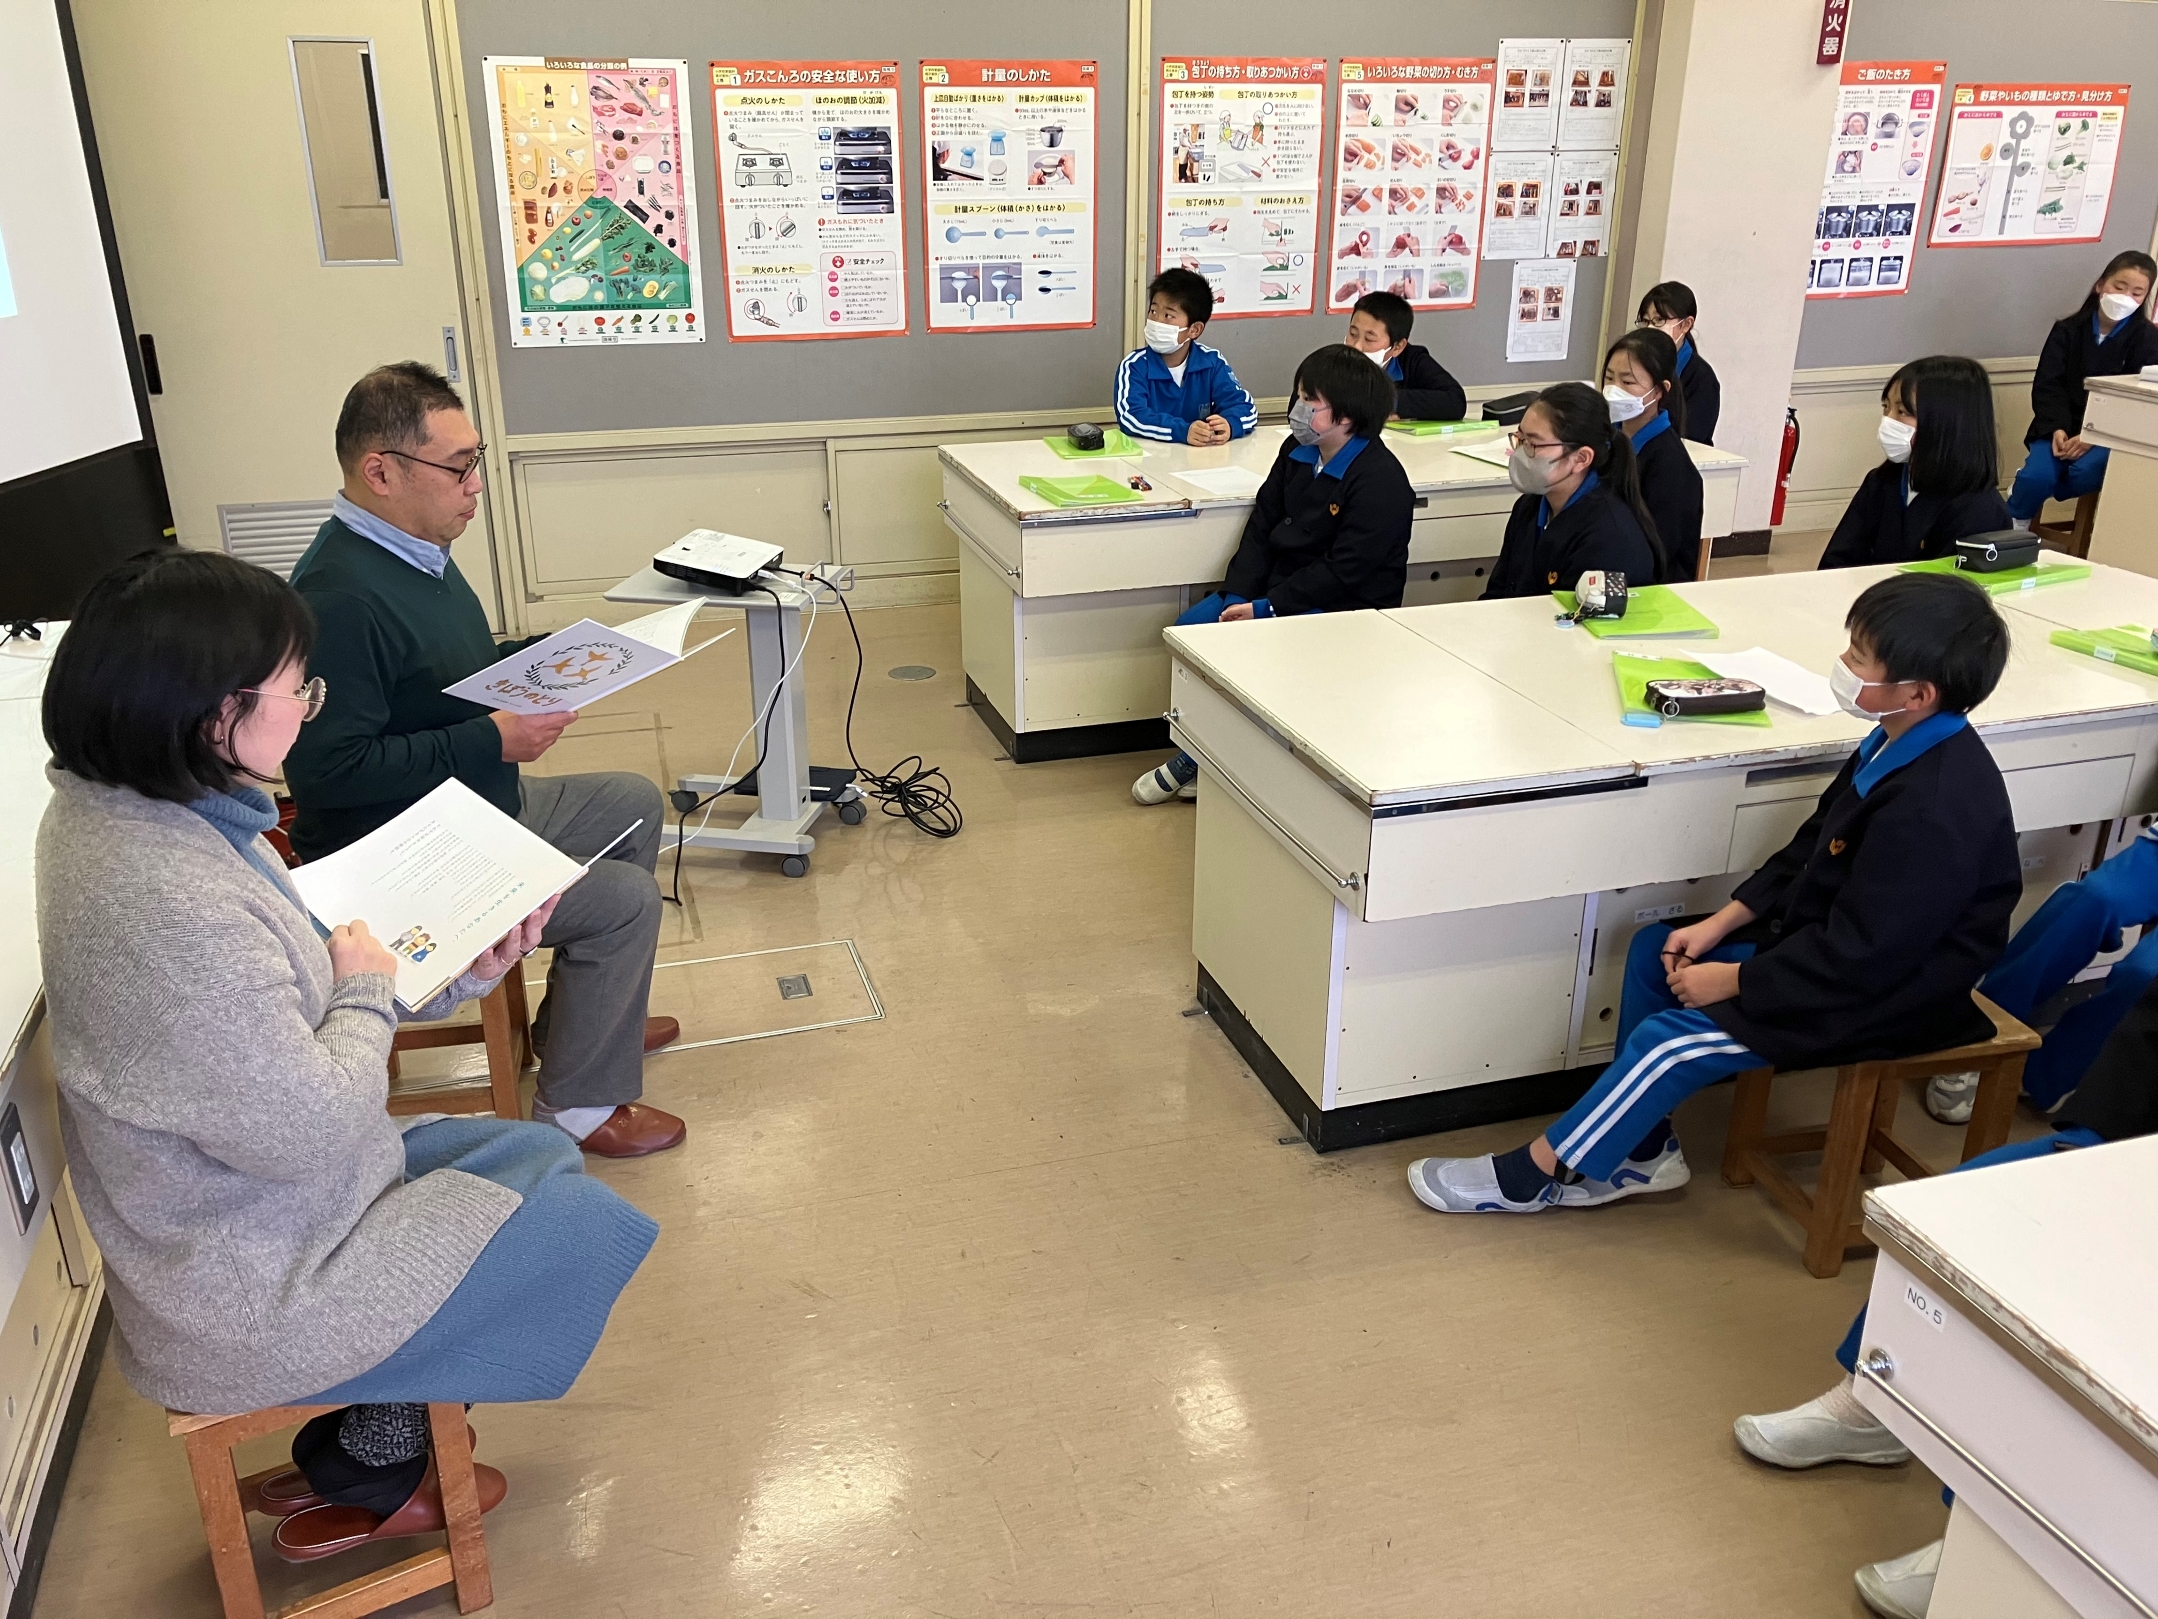 江藤さんとよしもとさんの朗読に耳を傾ける児童